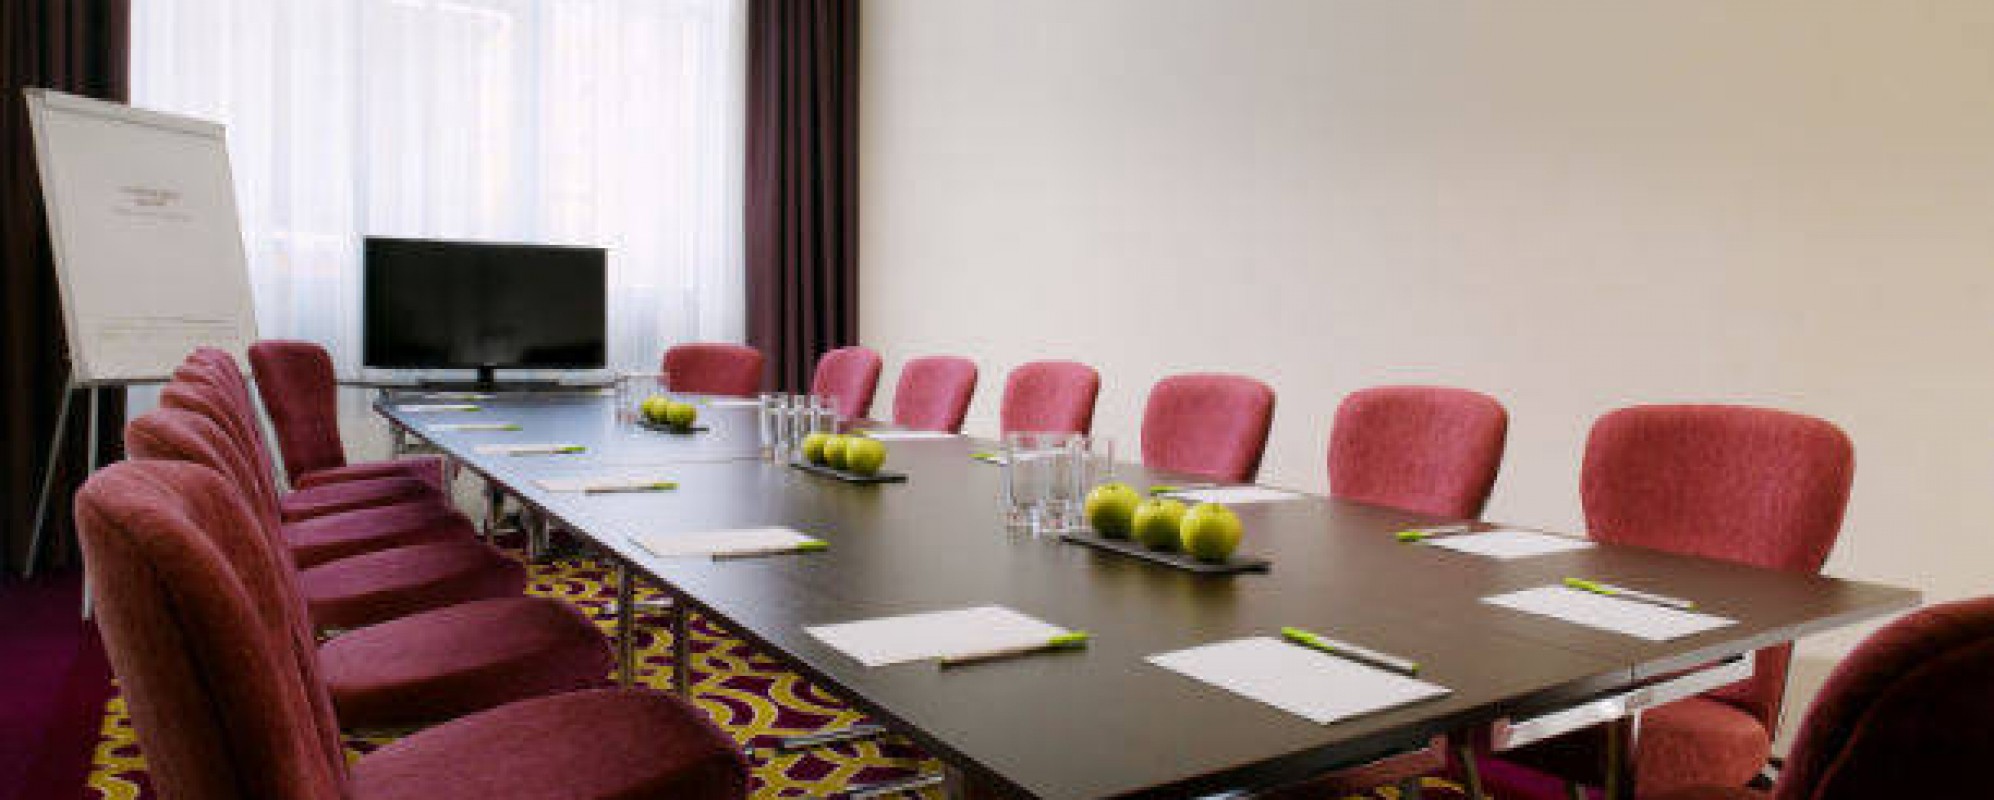 Фотографии комнаты для переговоров Ватома